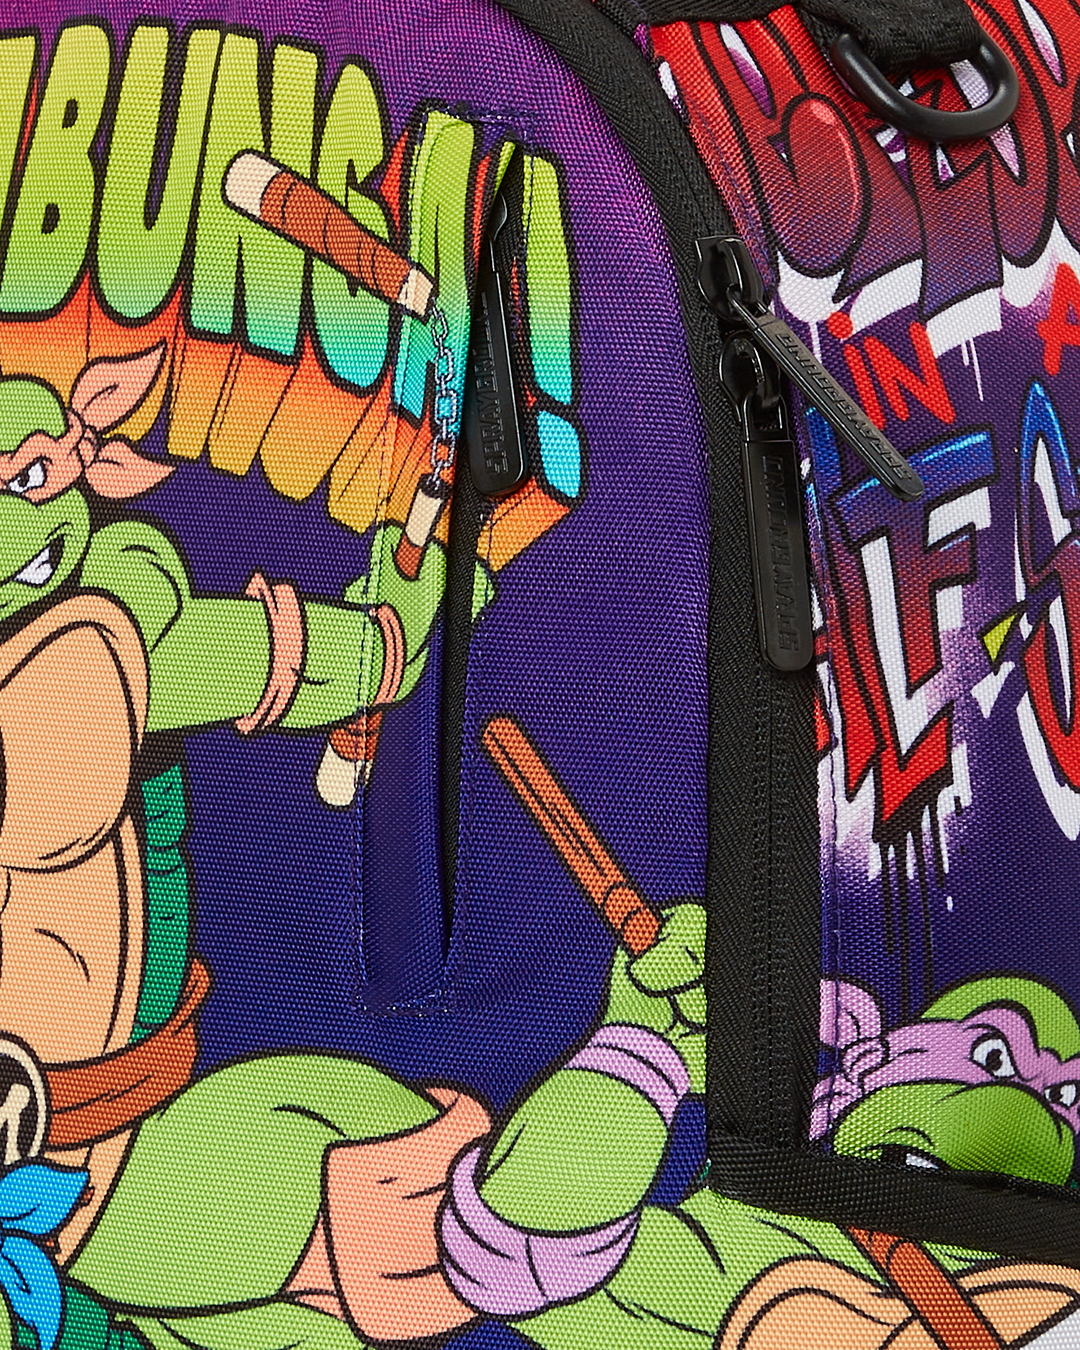 NEW! RARE STYLE! Teenage Mutant Ninja Turtles Backpack Spray Paint Graffiti  Art